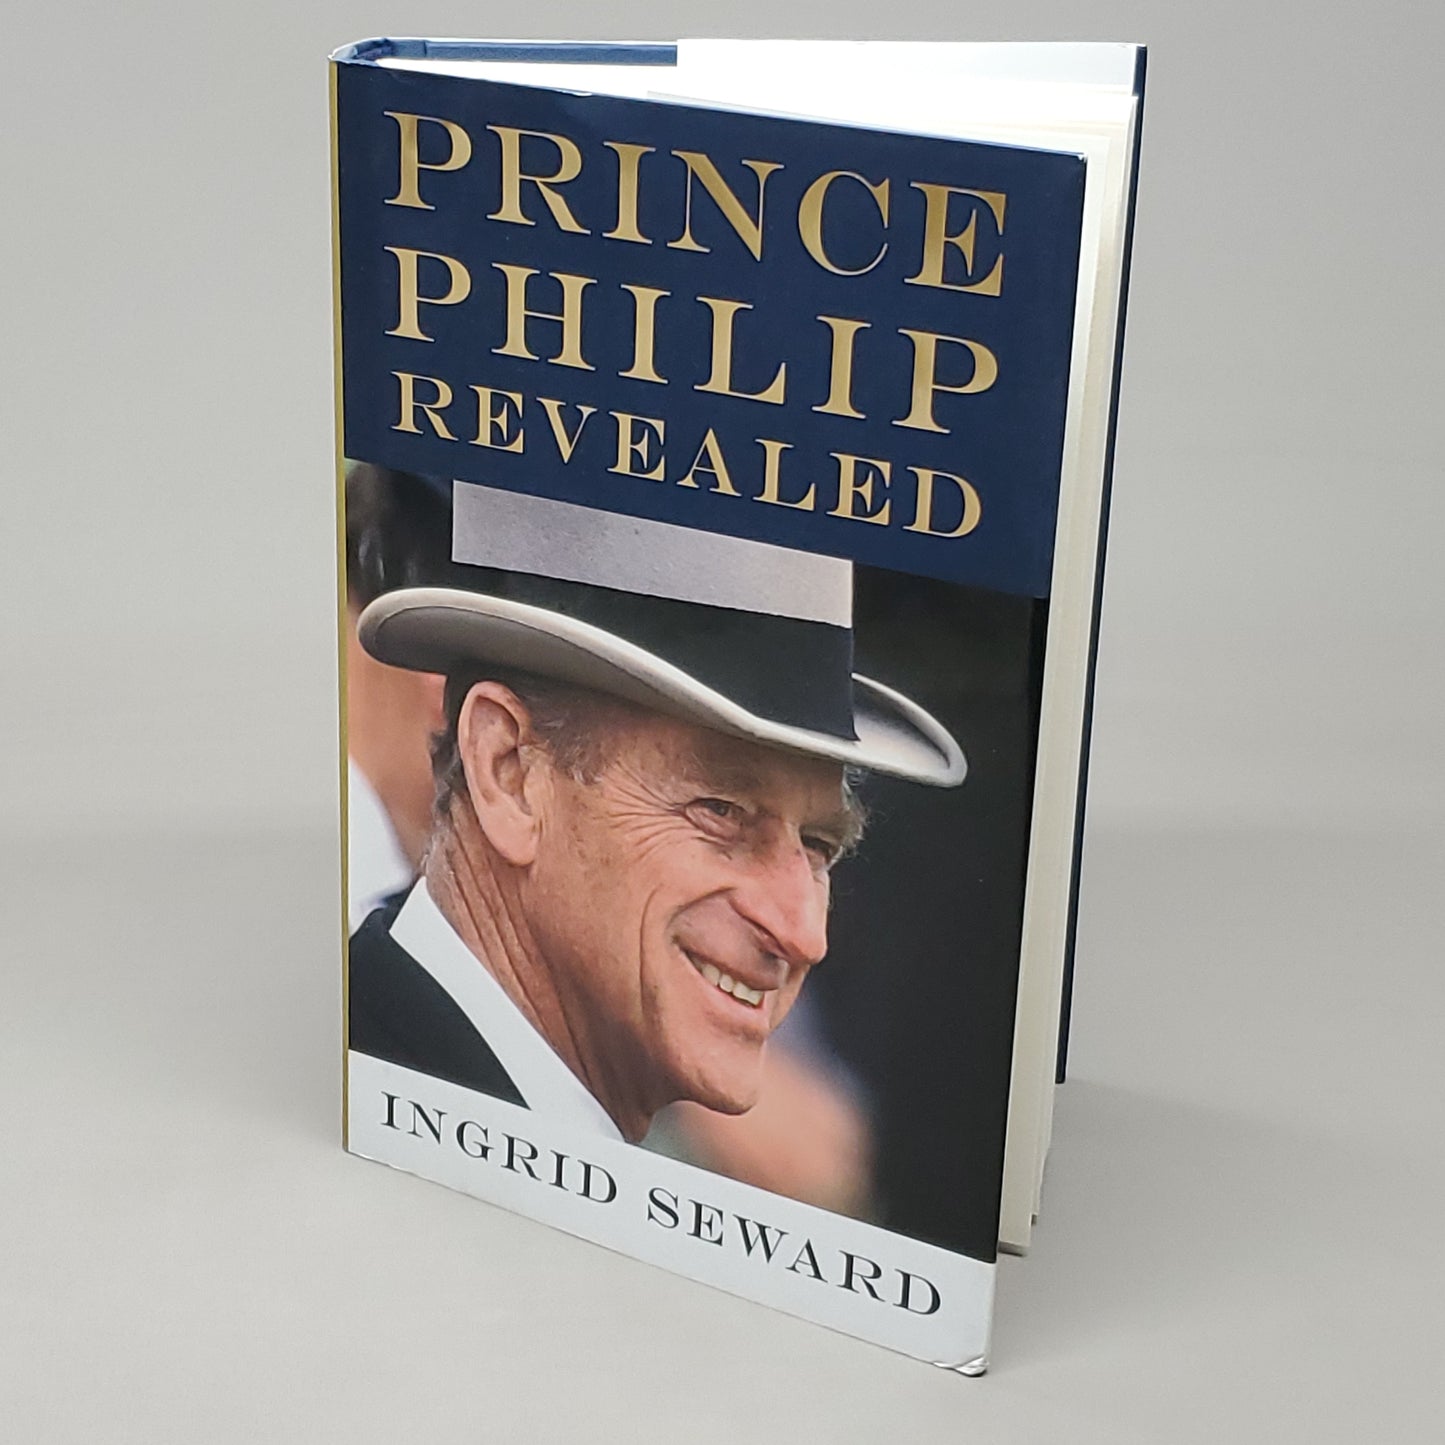 PRINCE PHILIP REVEALED by Ingrid Seward Book Hardback (New)